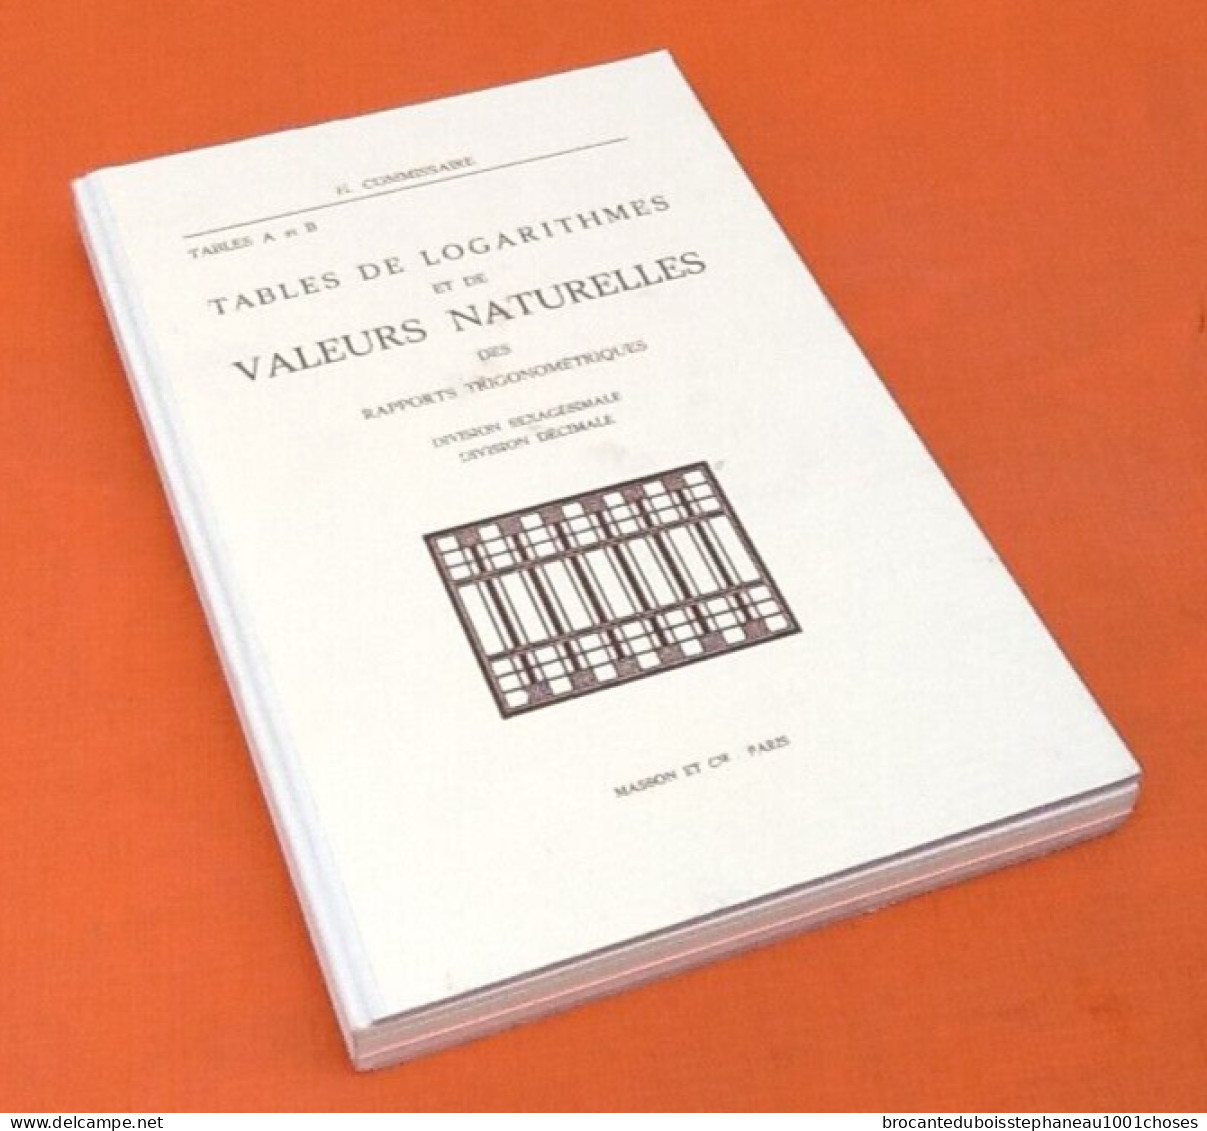 H. Commissaire   (1968)  Tables de Logarithmes et de valeurs naturelles des rapports Trigonométriques